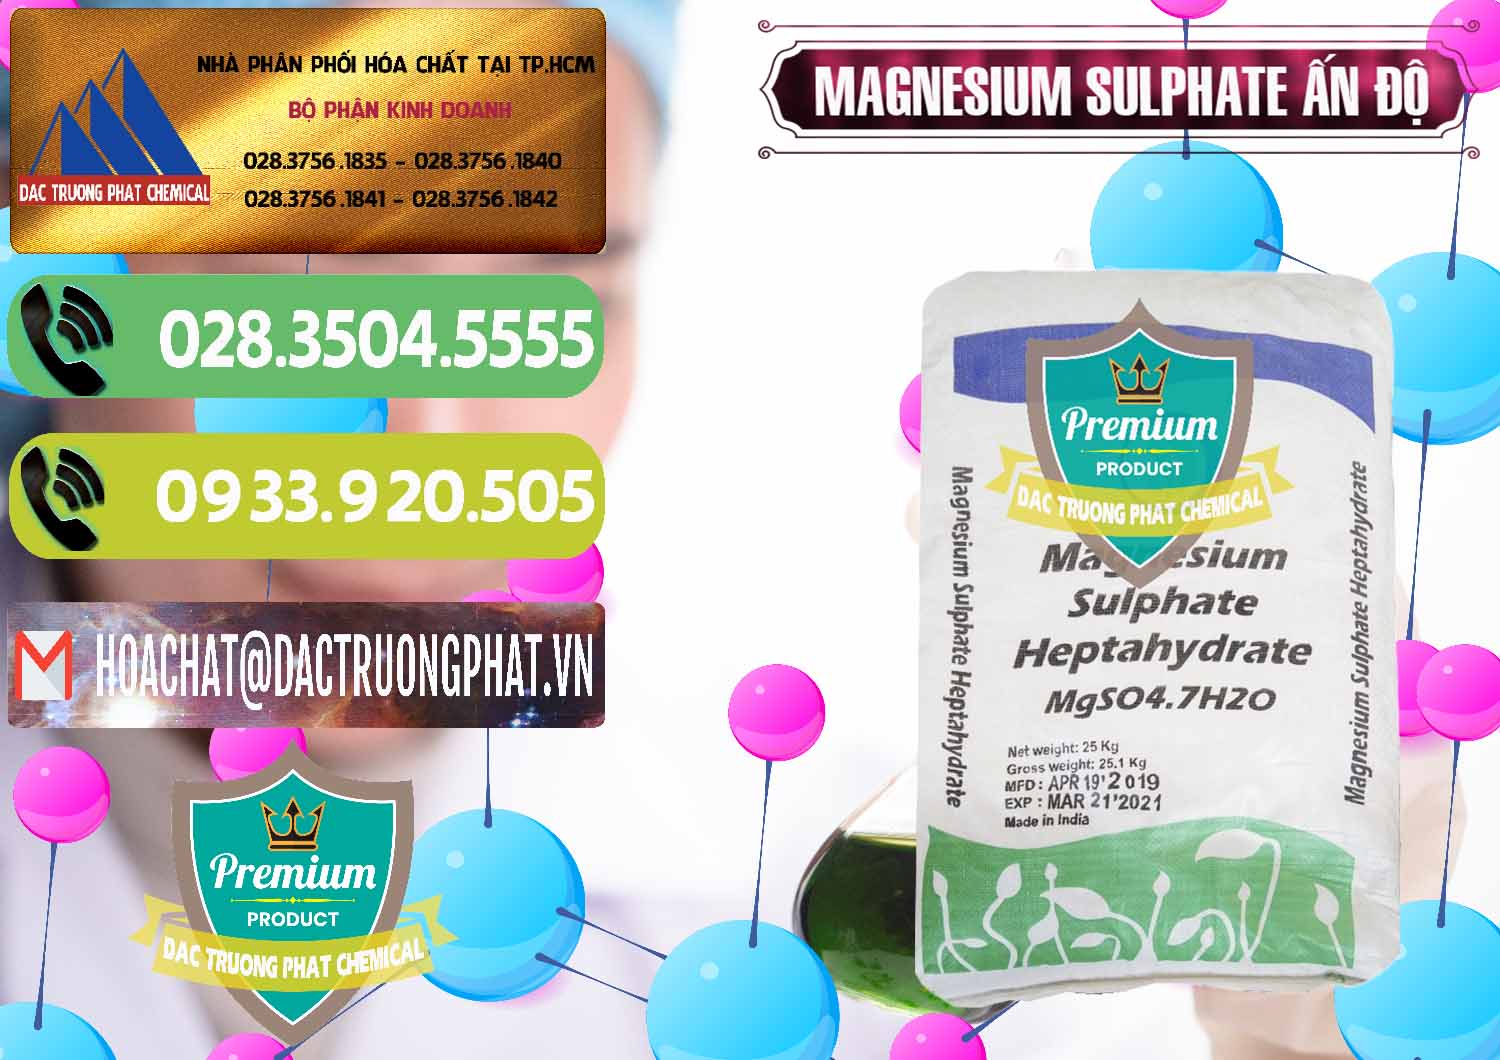 Nơi chuyên cung ứng _ bán MGSO4.7H2O – Magnesium Sulphate Heptahydrate Ấn Độ India - 0362 - Cty phân phối ( kinh doanh ) hóa chất tại TP.HCM - hoachatmientay.vn